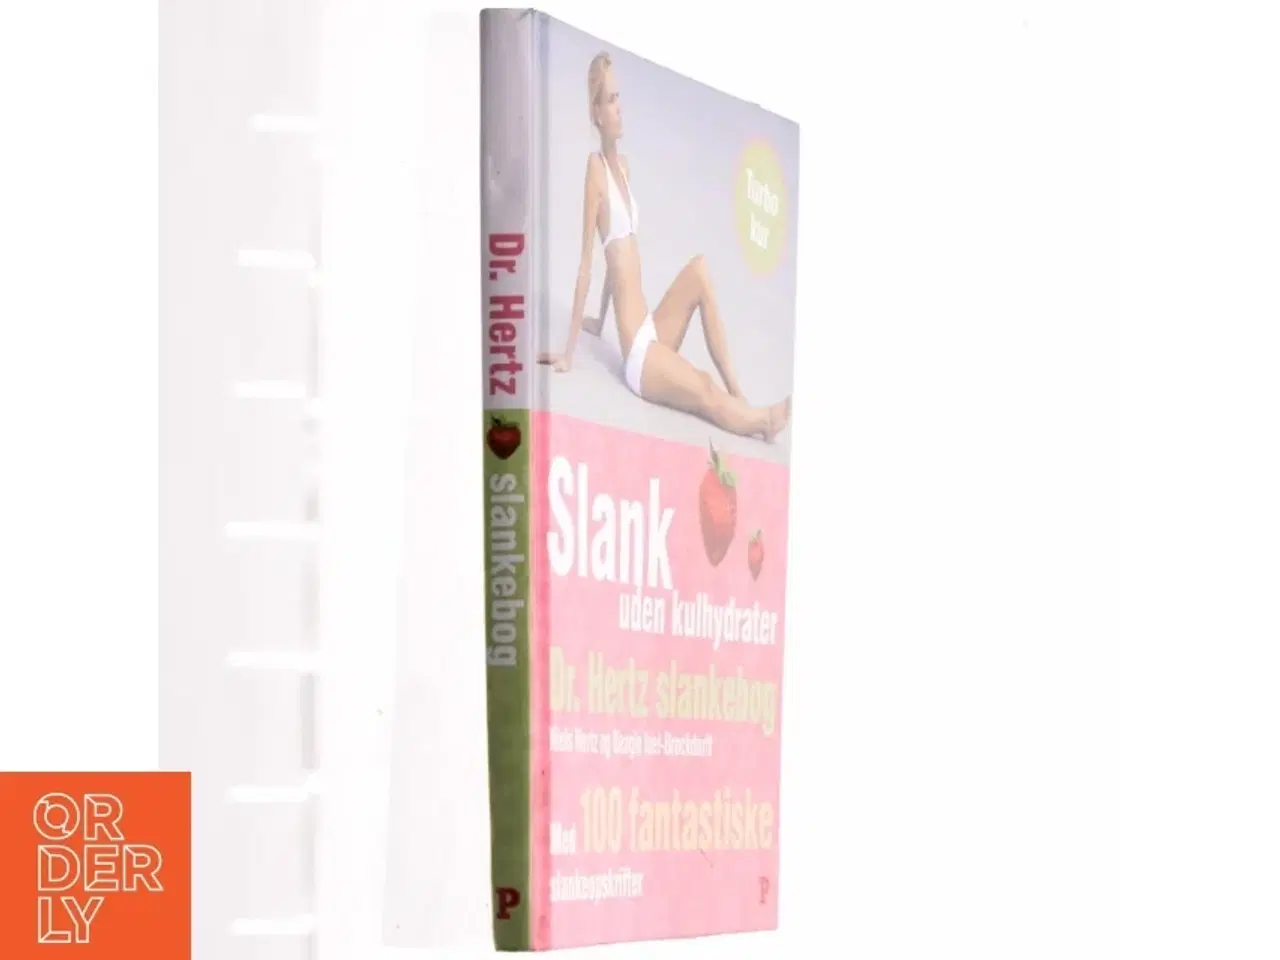 Billede 1 - Dr. Hertz' slankebog : slank næsten uden kulhydrater : med 100 fantastiske slankeopskrifter (Bog)